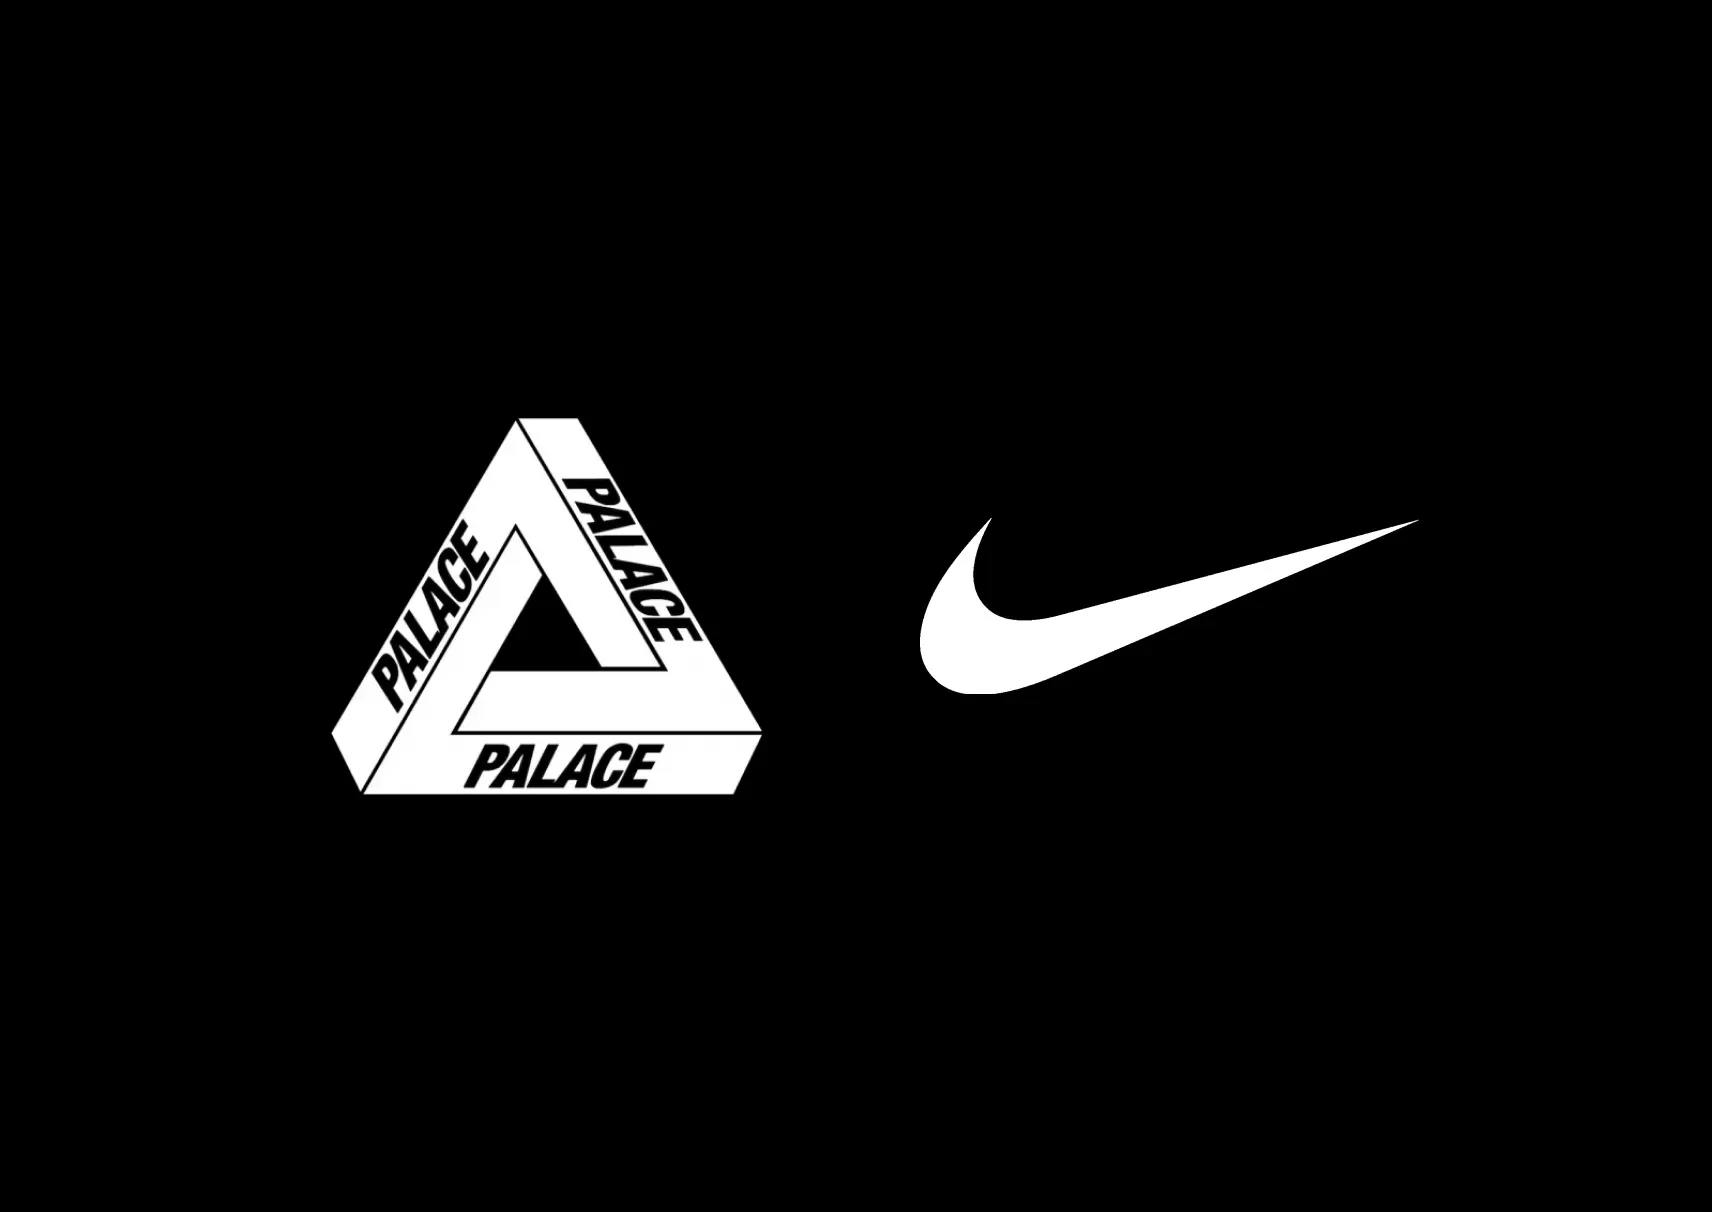 Palace x Nike : une collaboration est prévue pour 2026